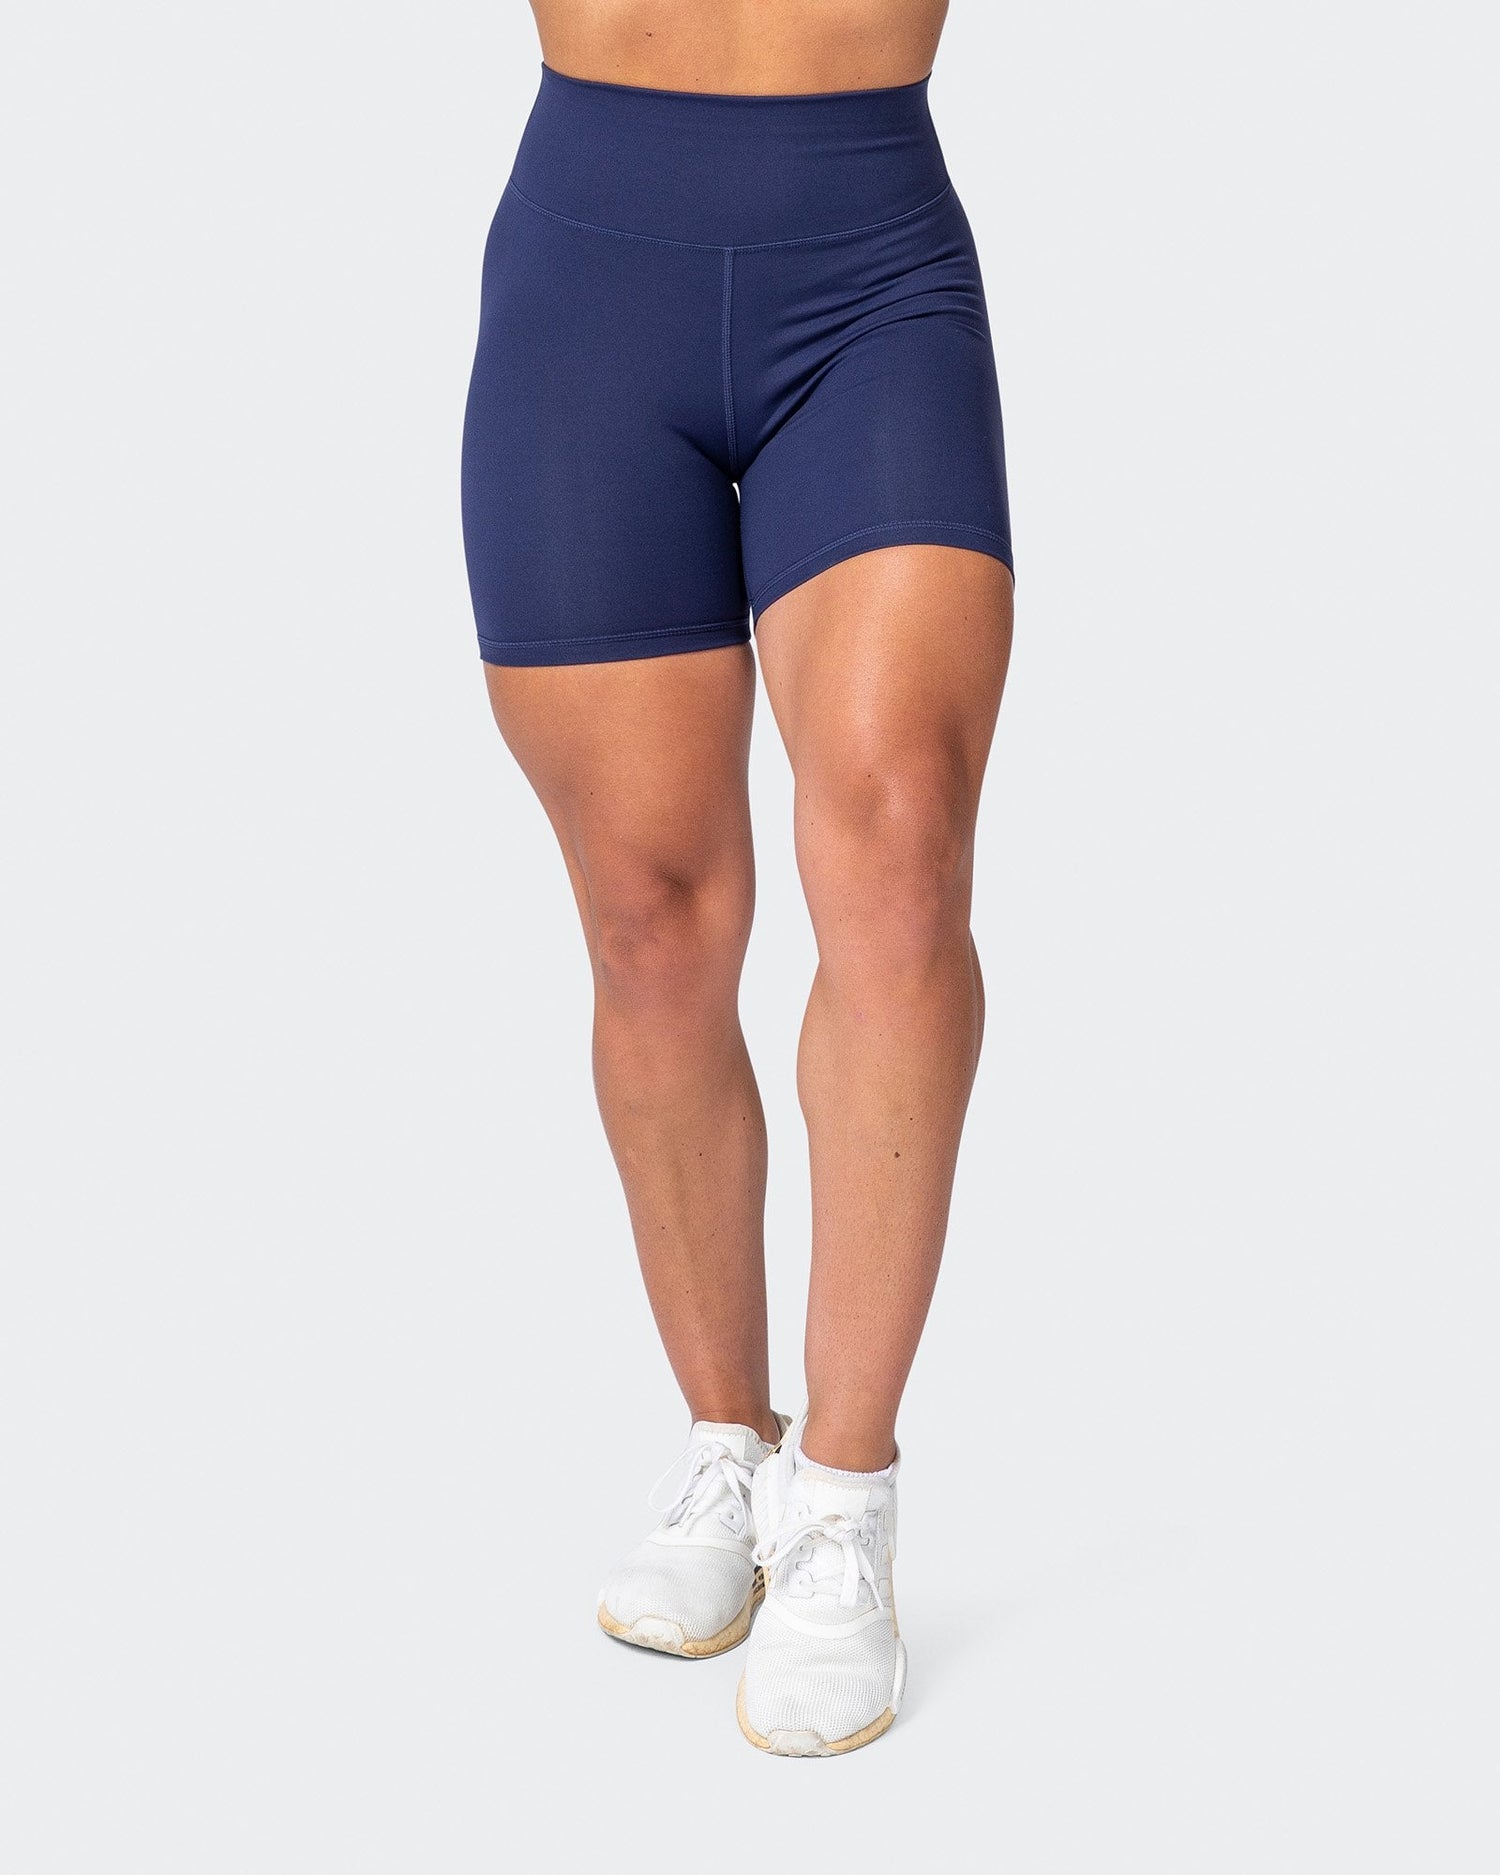 Knix Womens Shorts Light Blue Essential Biker Short - Depop